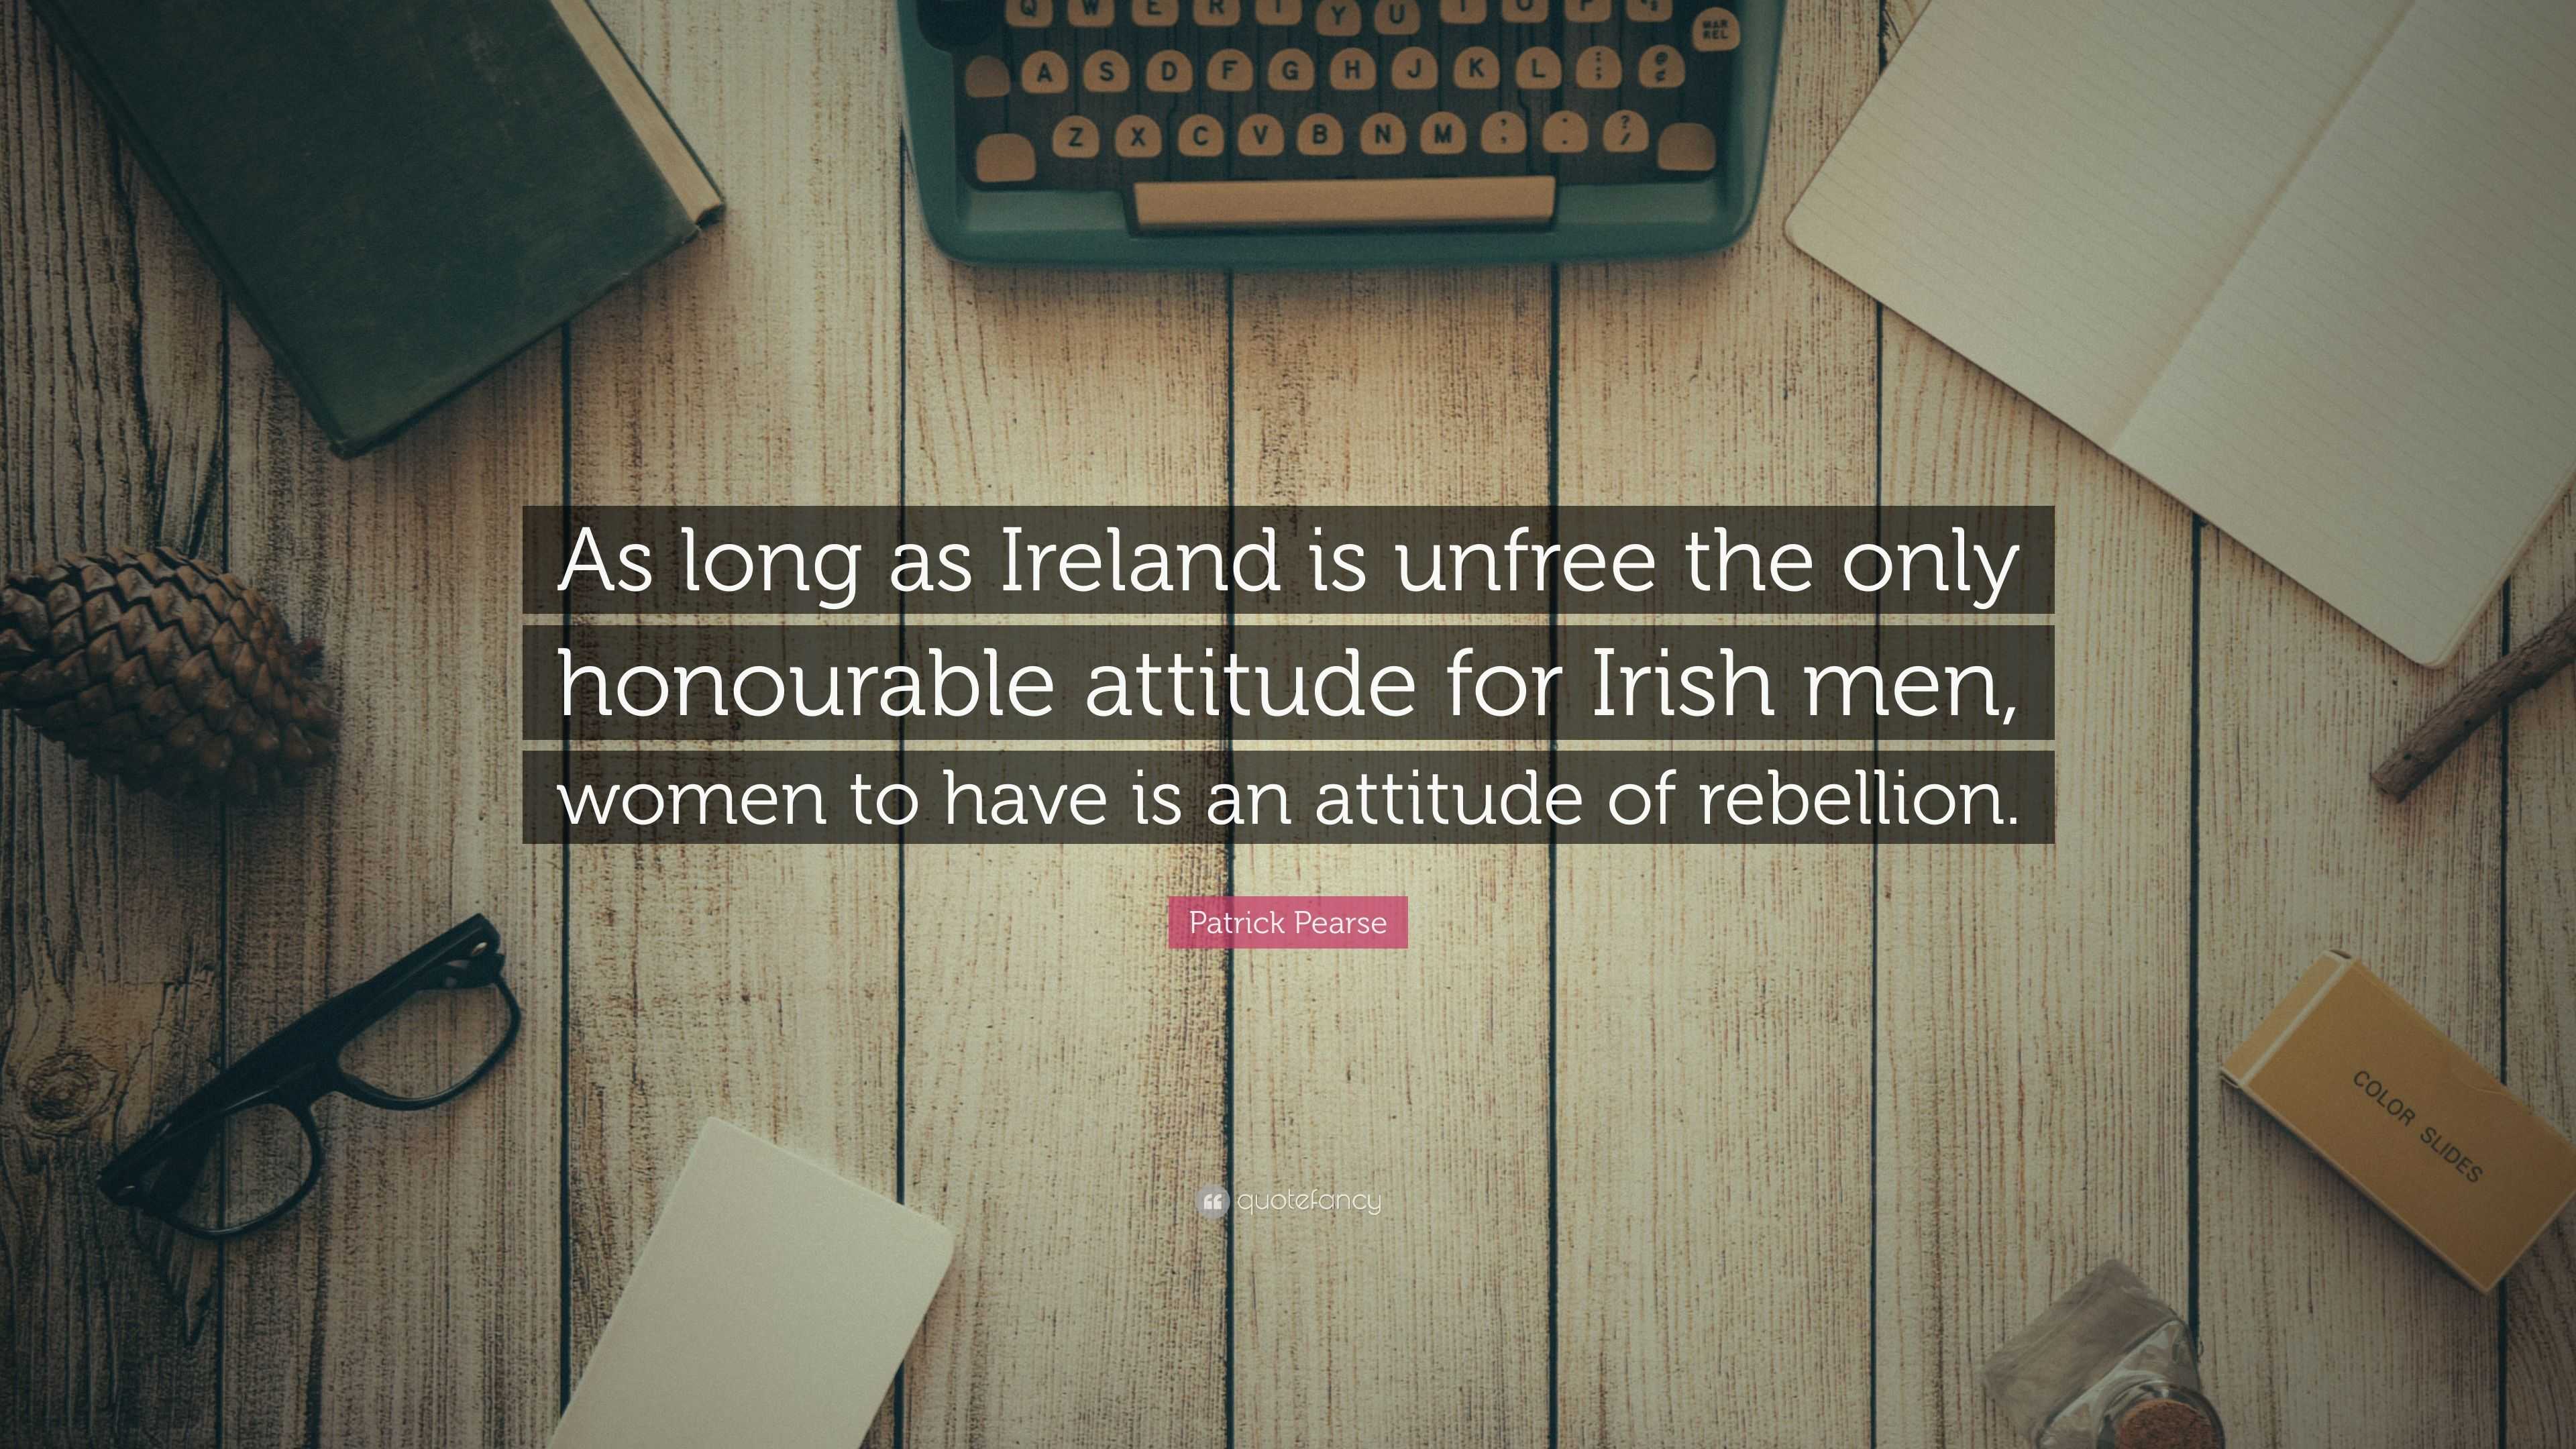 irish men quotes